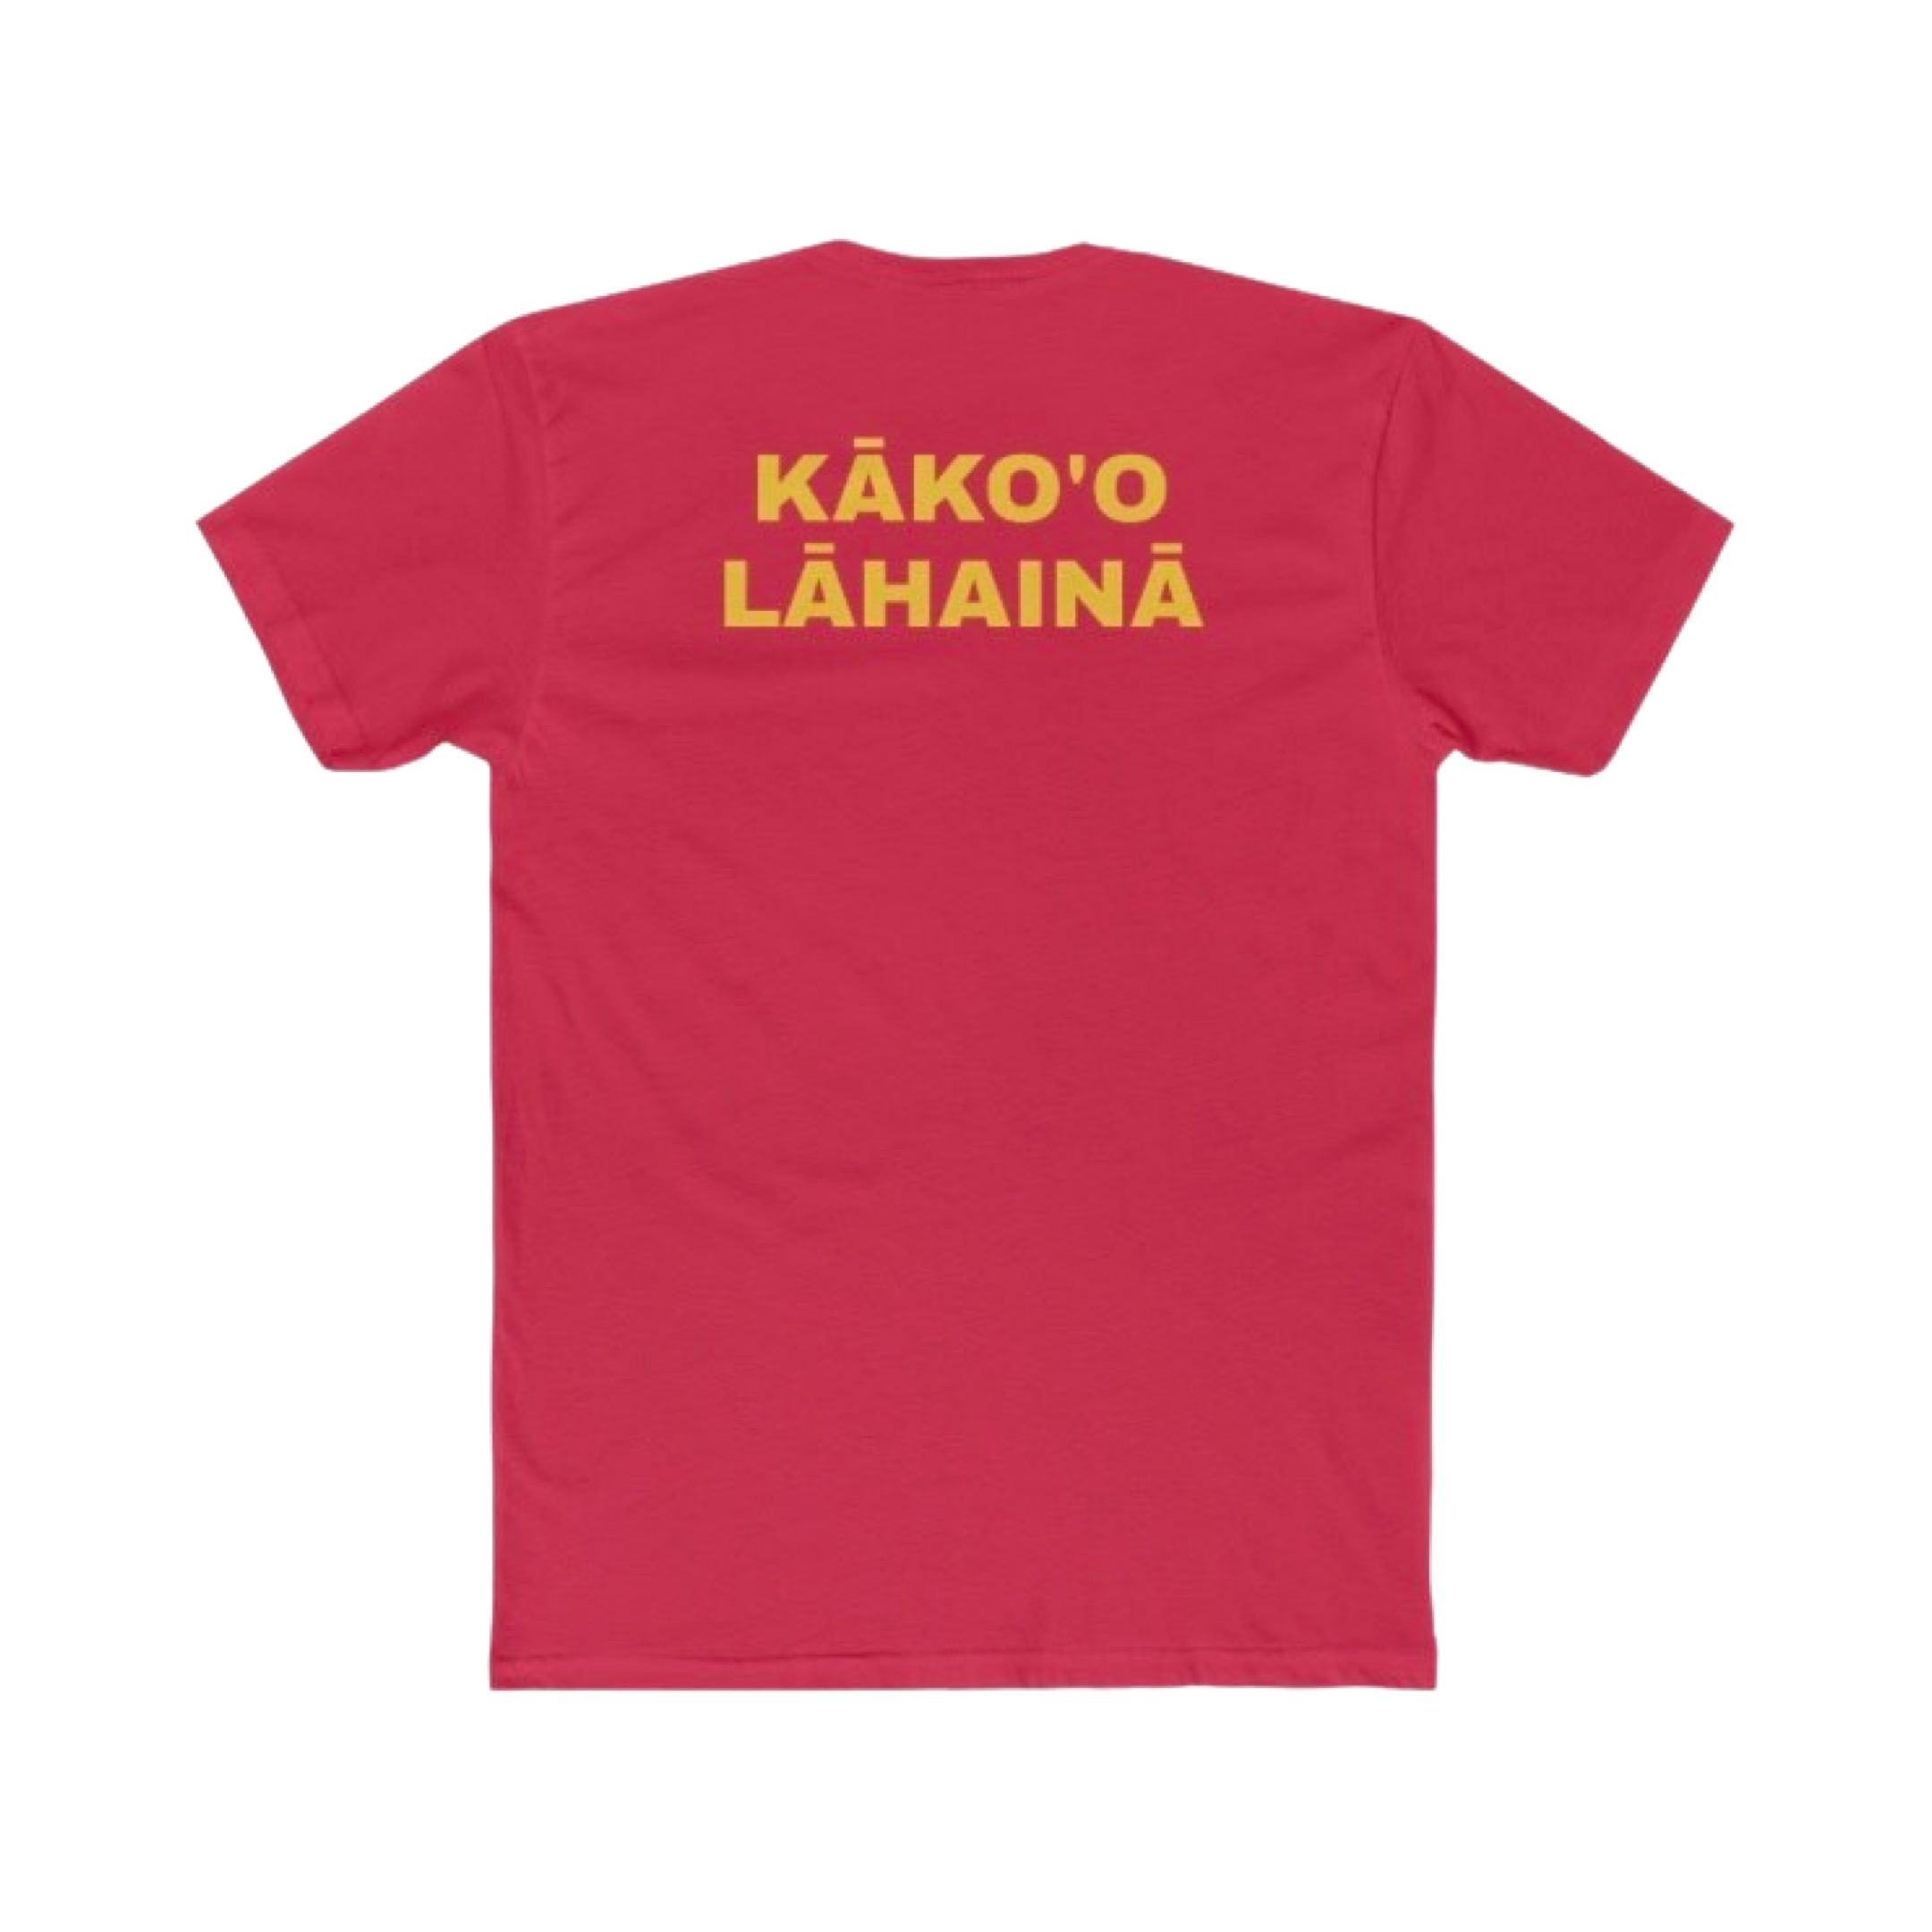 LĀHAINĀ STRONG - Lōkahi - Men's T-Shirt - Lāhainā Fundraiser